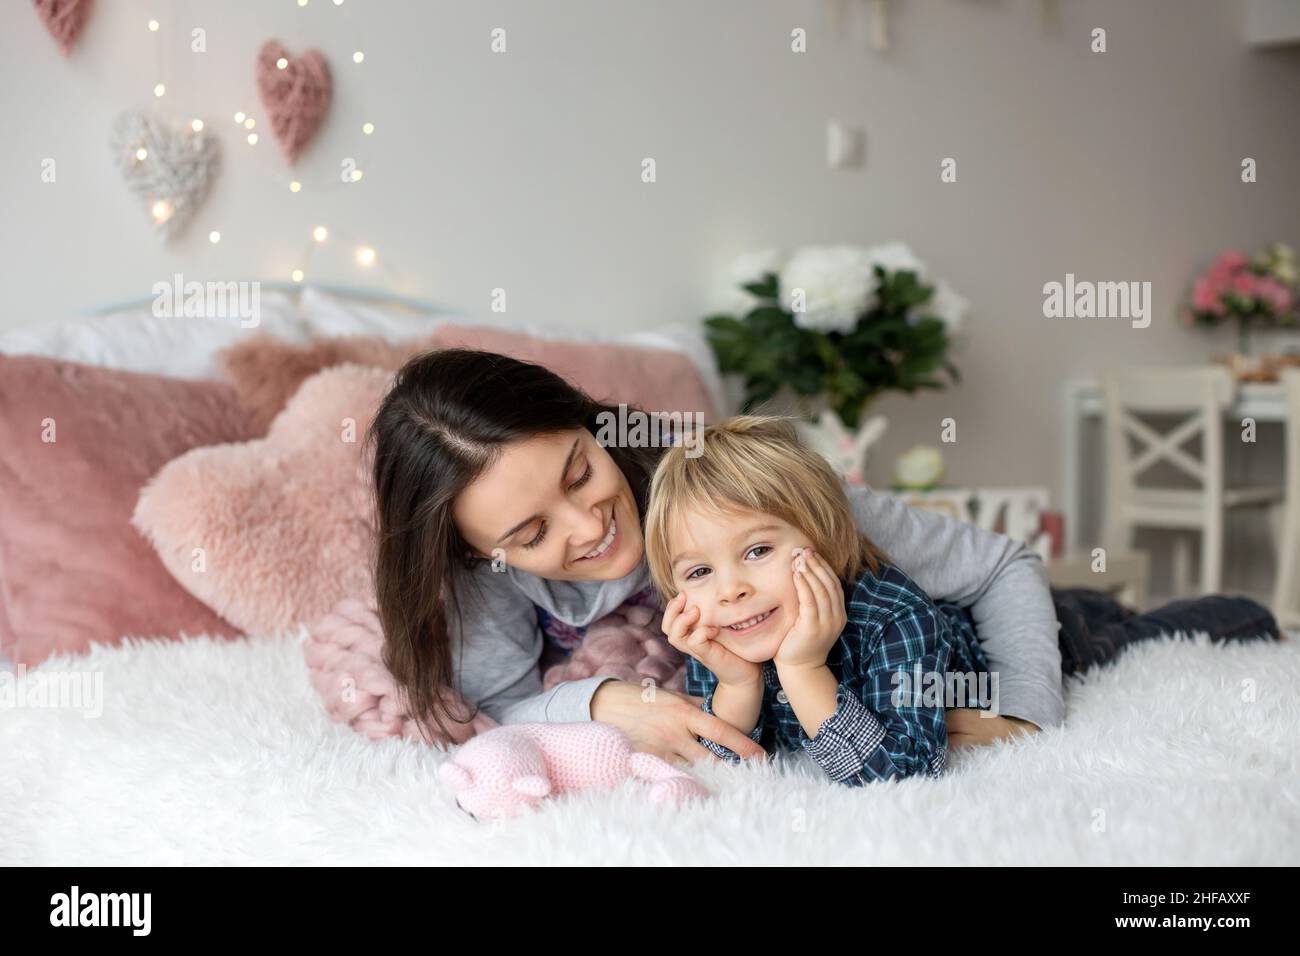 Schöne blonde Junge und Mutter, im Bett liegend, versteckt unter Decke, genießen Familie Zeit zusammen Stockfoto